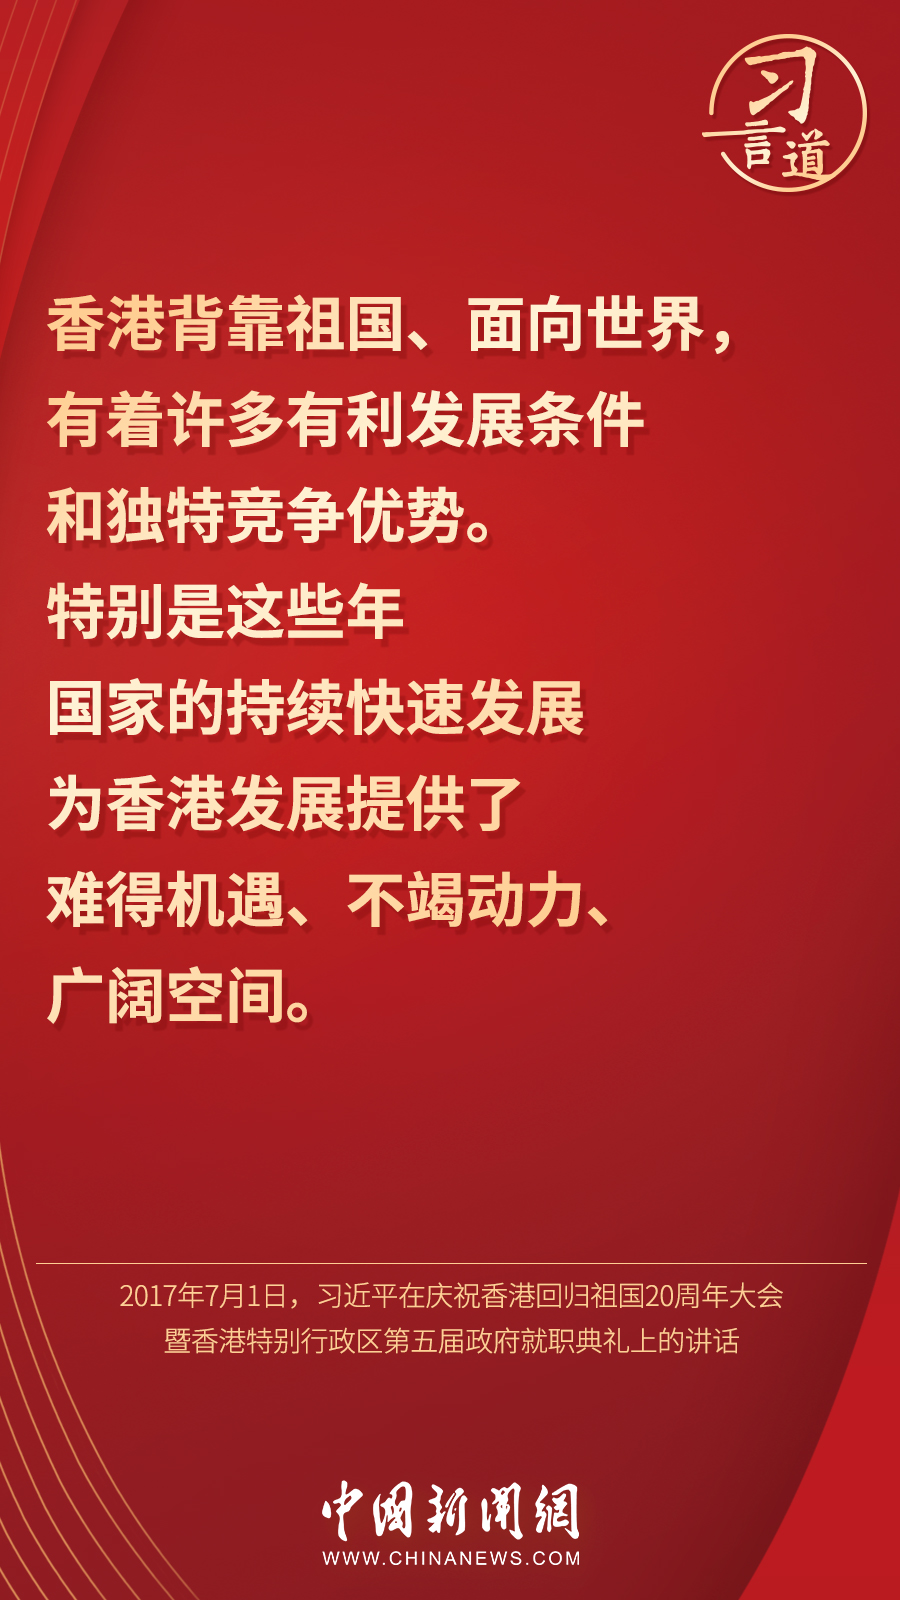 【明珠耀香江】习言道丨“香港的命运从来同祖国紧密相连”